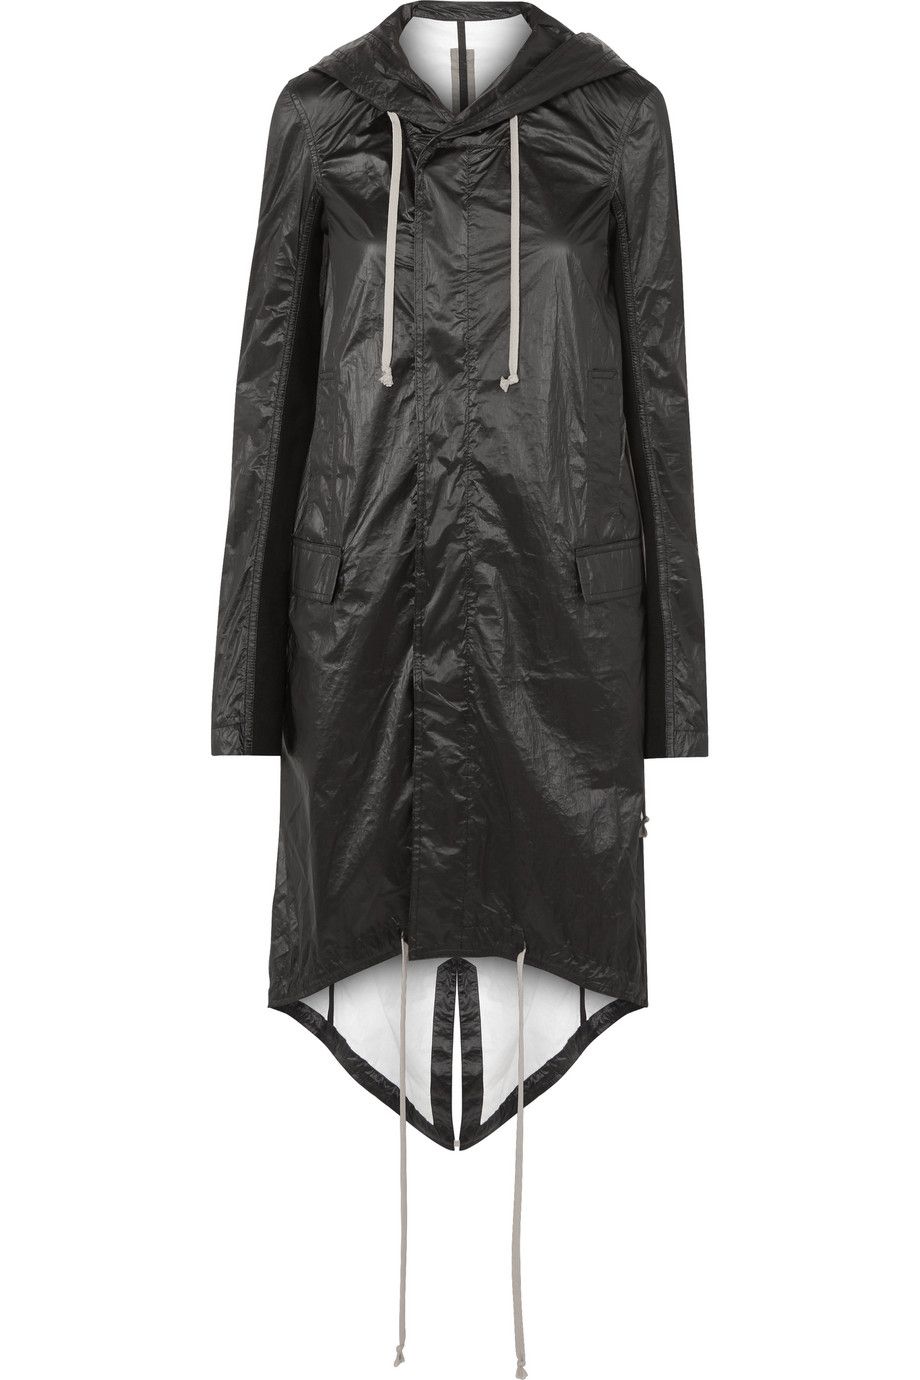 Clothing, Outerwear, Sleeve, Jacket, Coat, Hood, Leather, Leather jacket, Raincoat, Dress, 